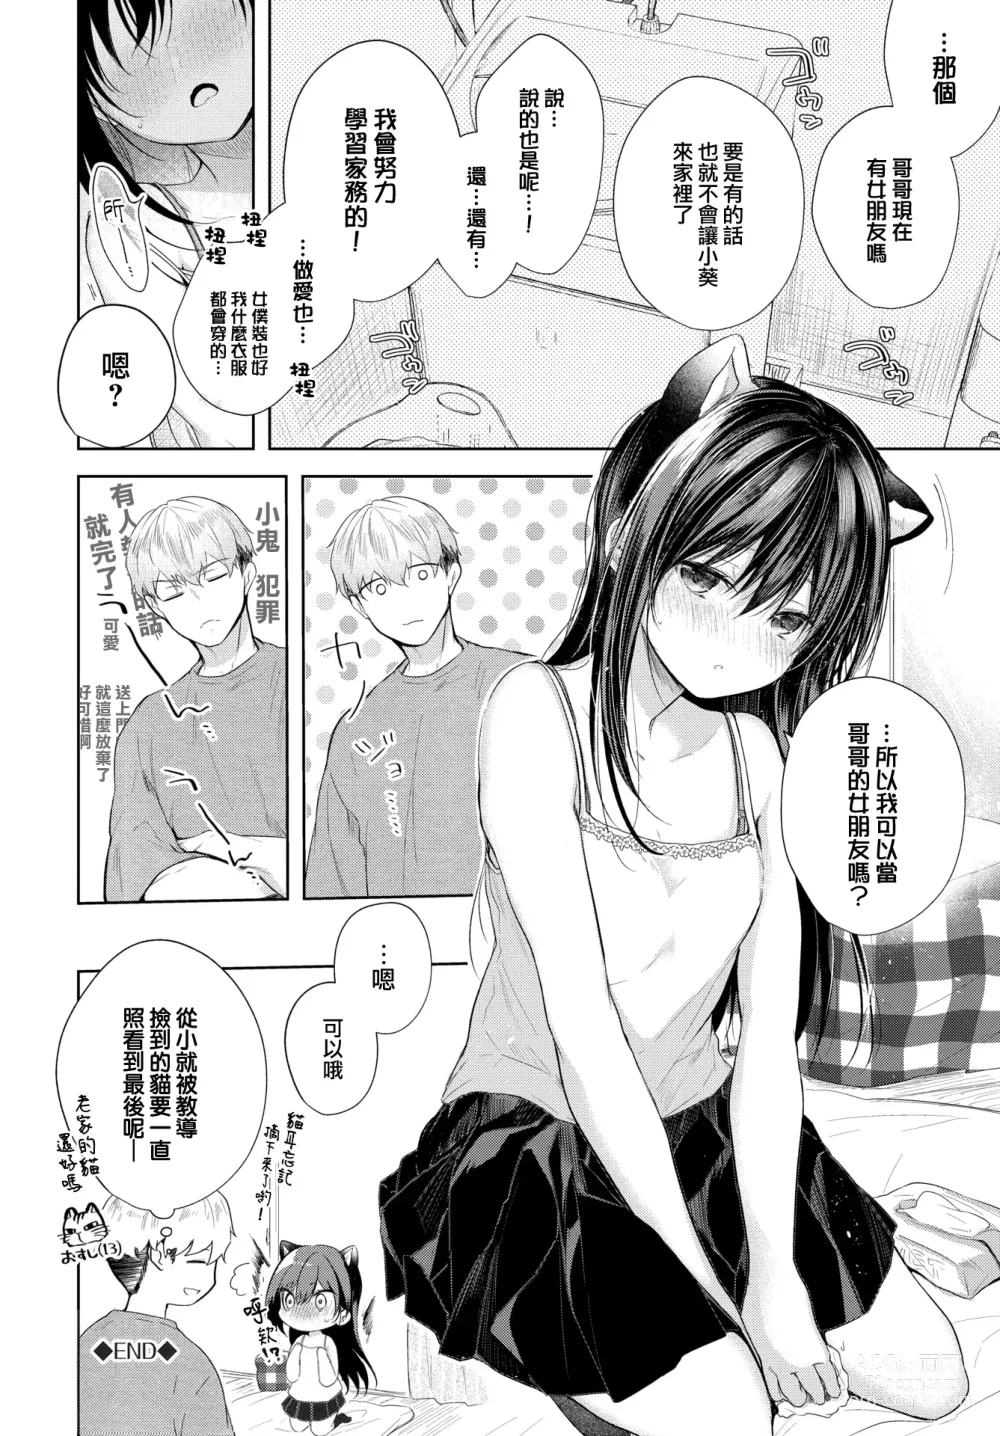 Page 193 of manga Ii mo Amai mo Kimi to Dake.